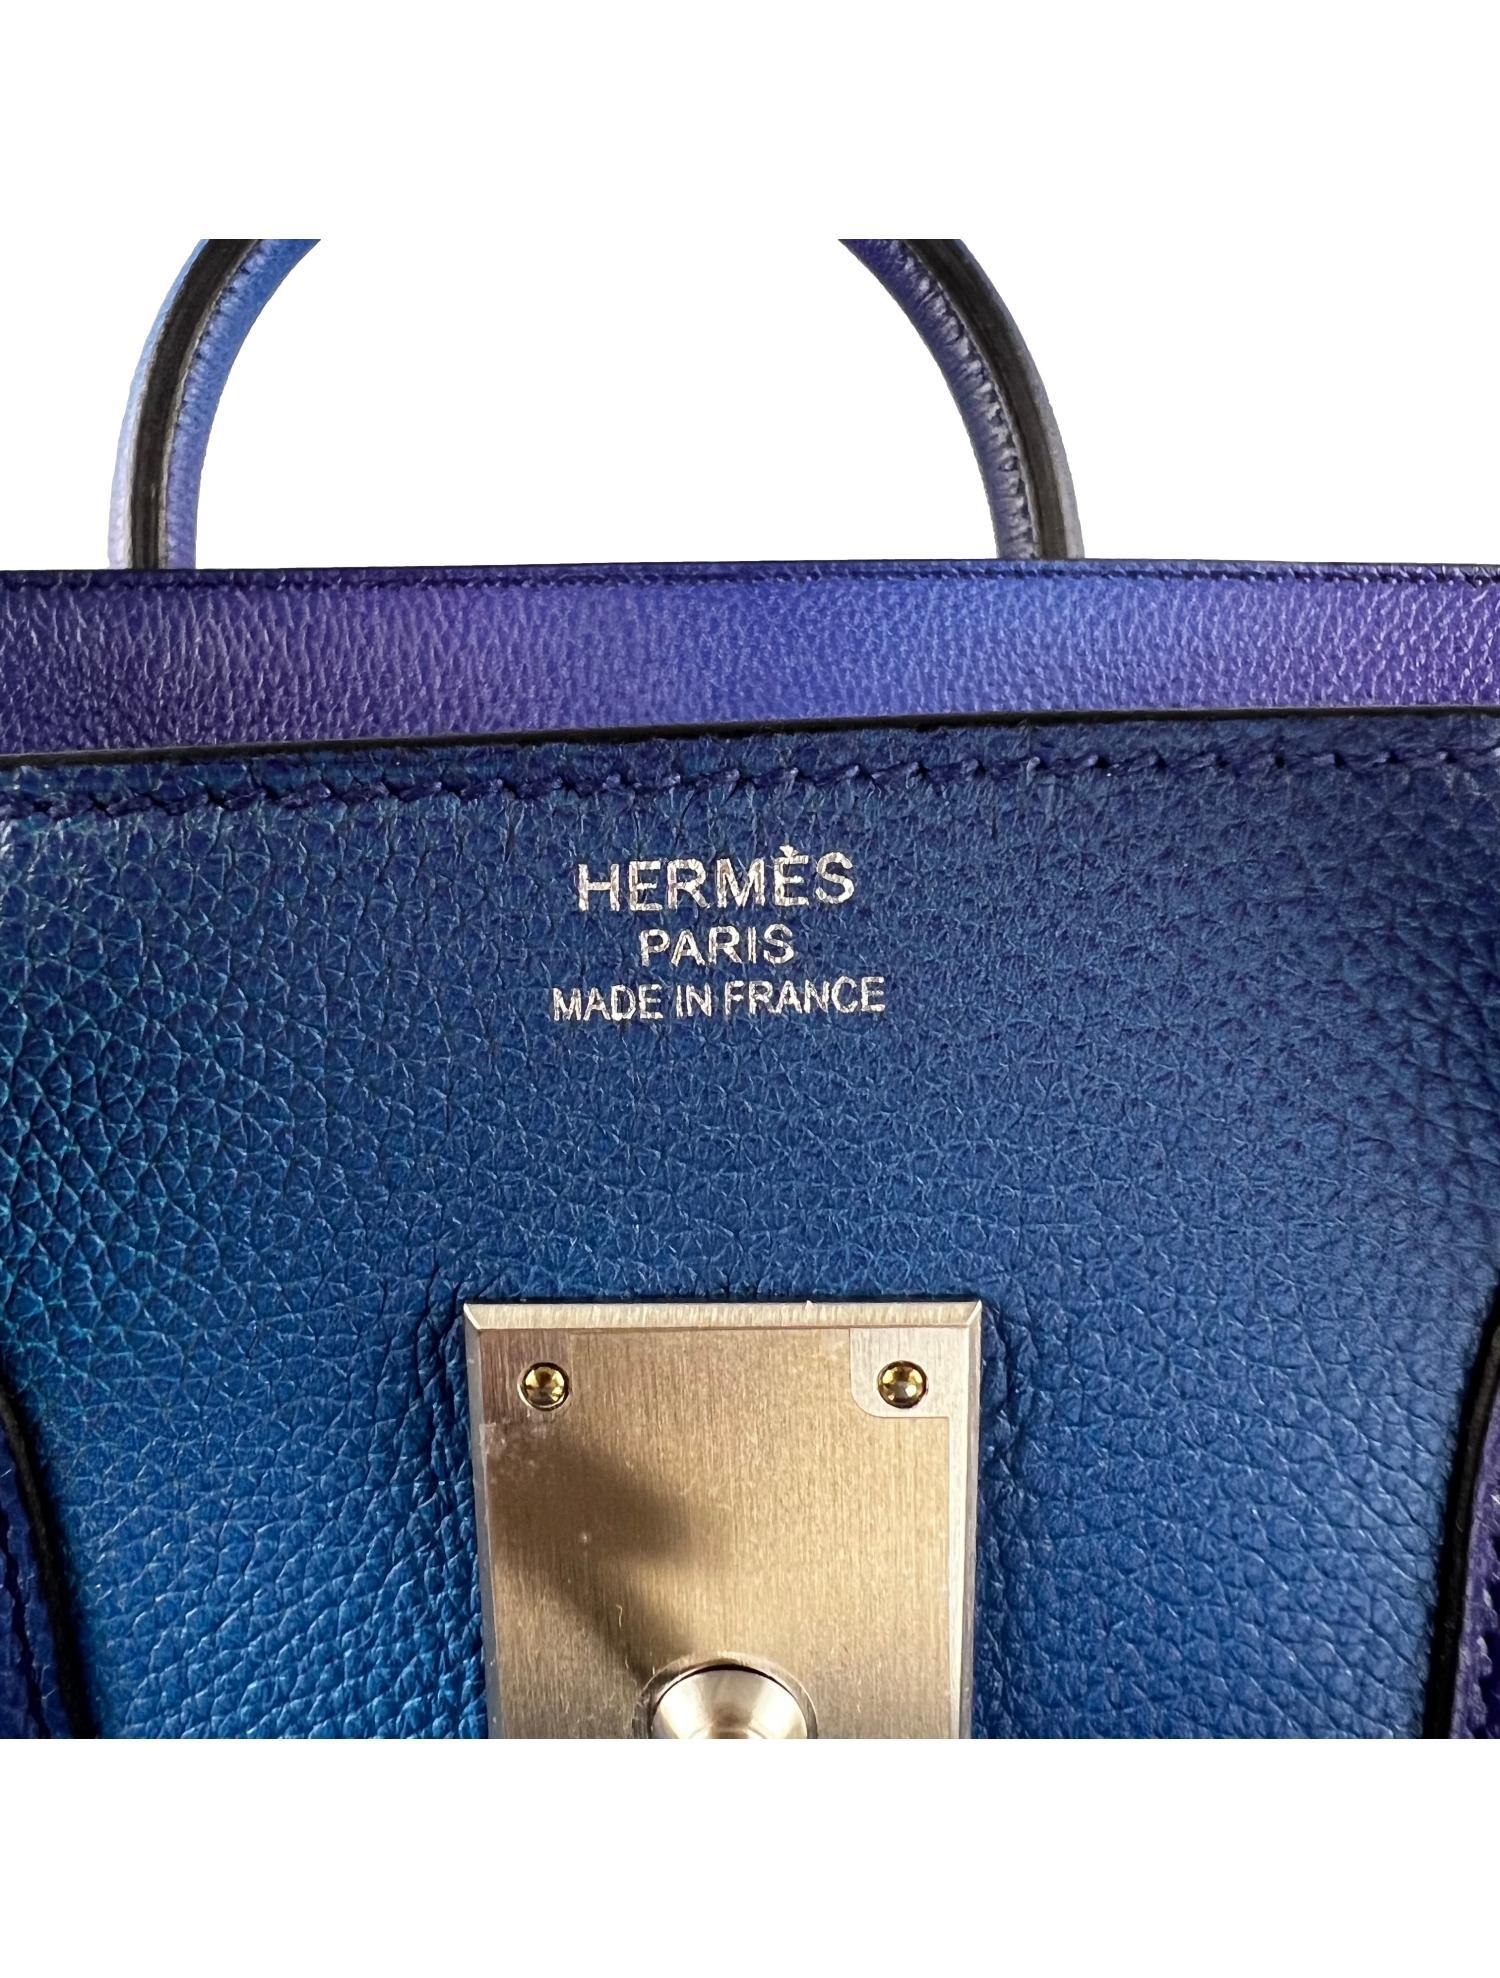 Hermès SS19 Ombré Haut à Courroies Cosmos HAC 50 Nuit Violet Limited Edition Bag 8